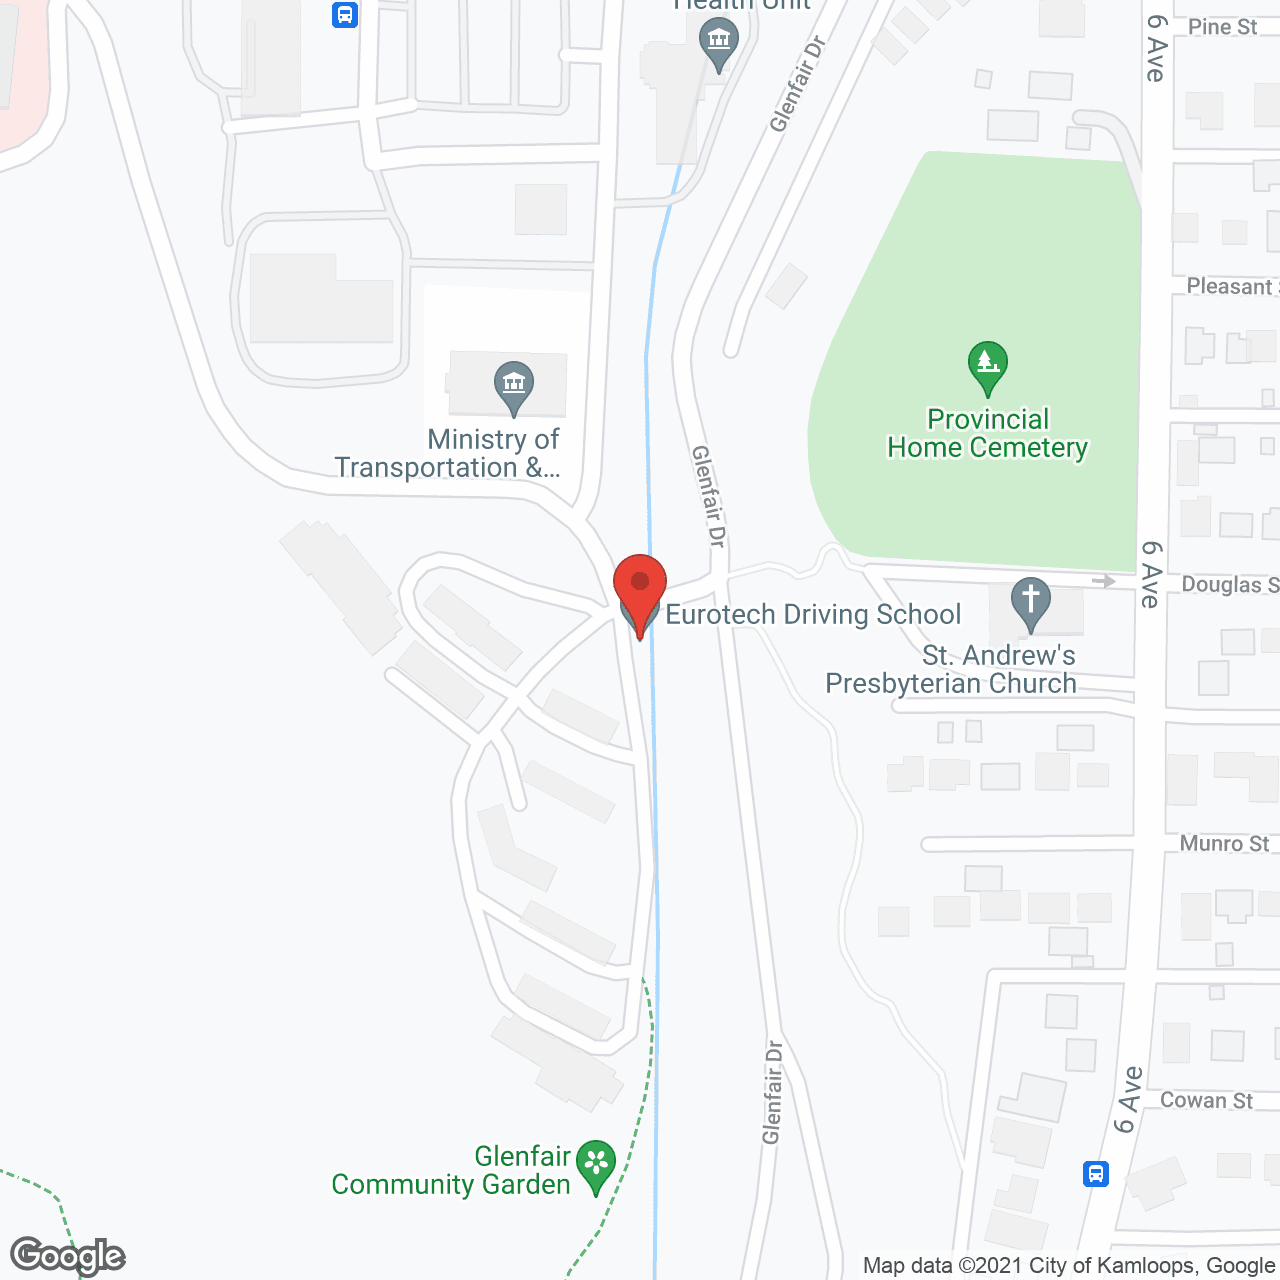 Glenfair Complex in google map